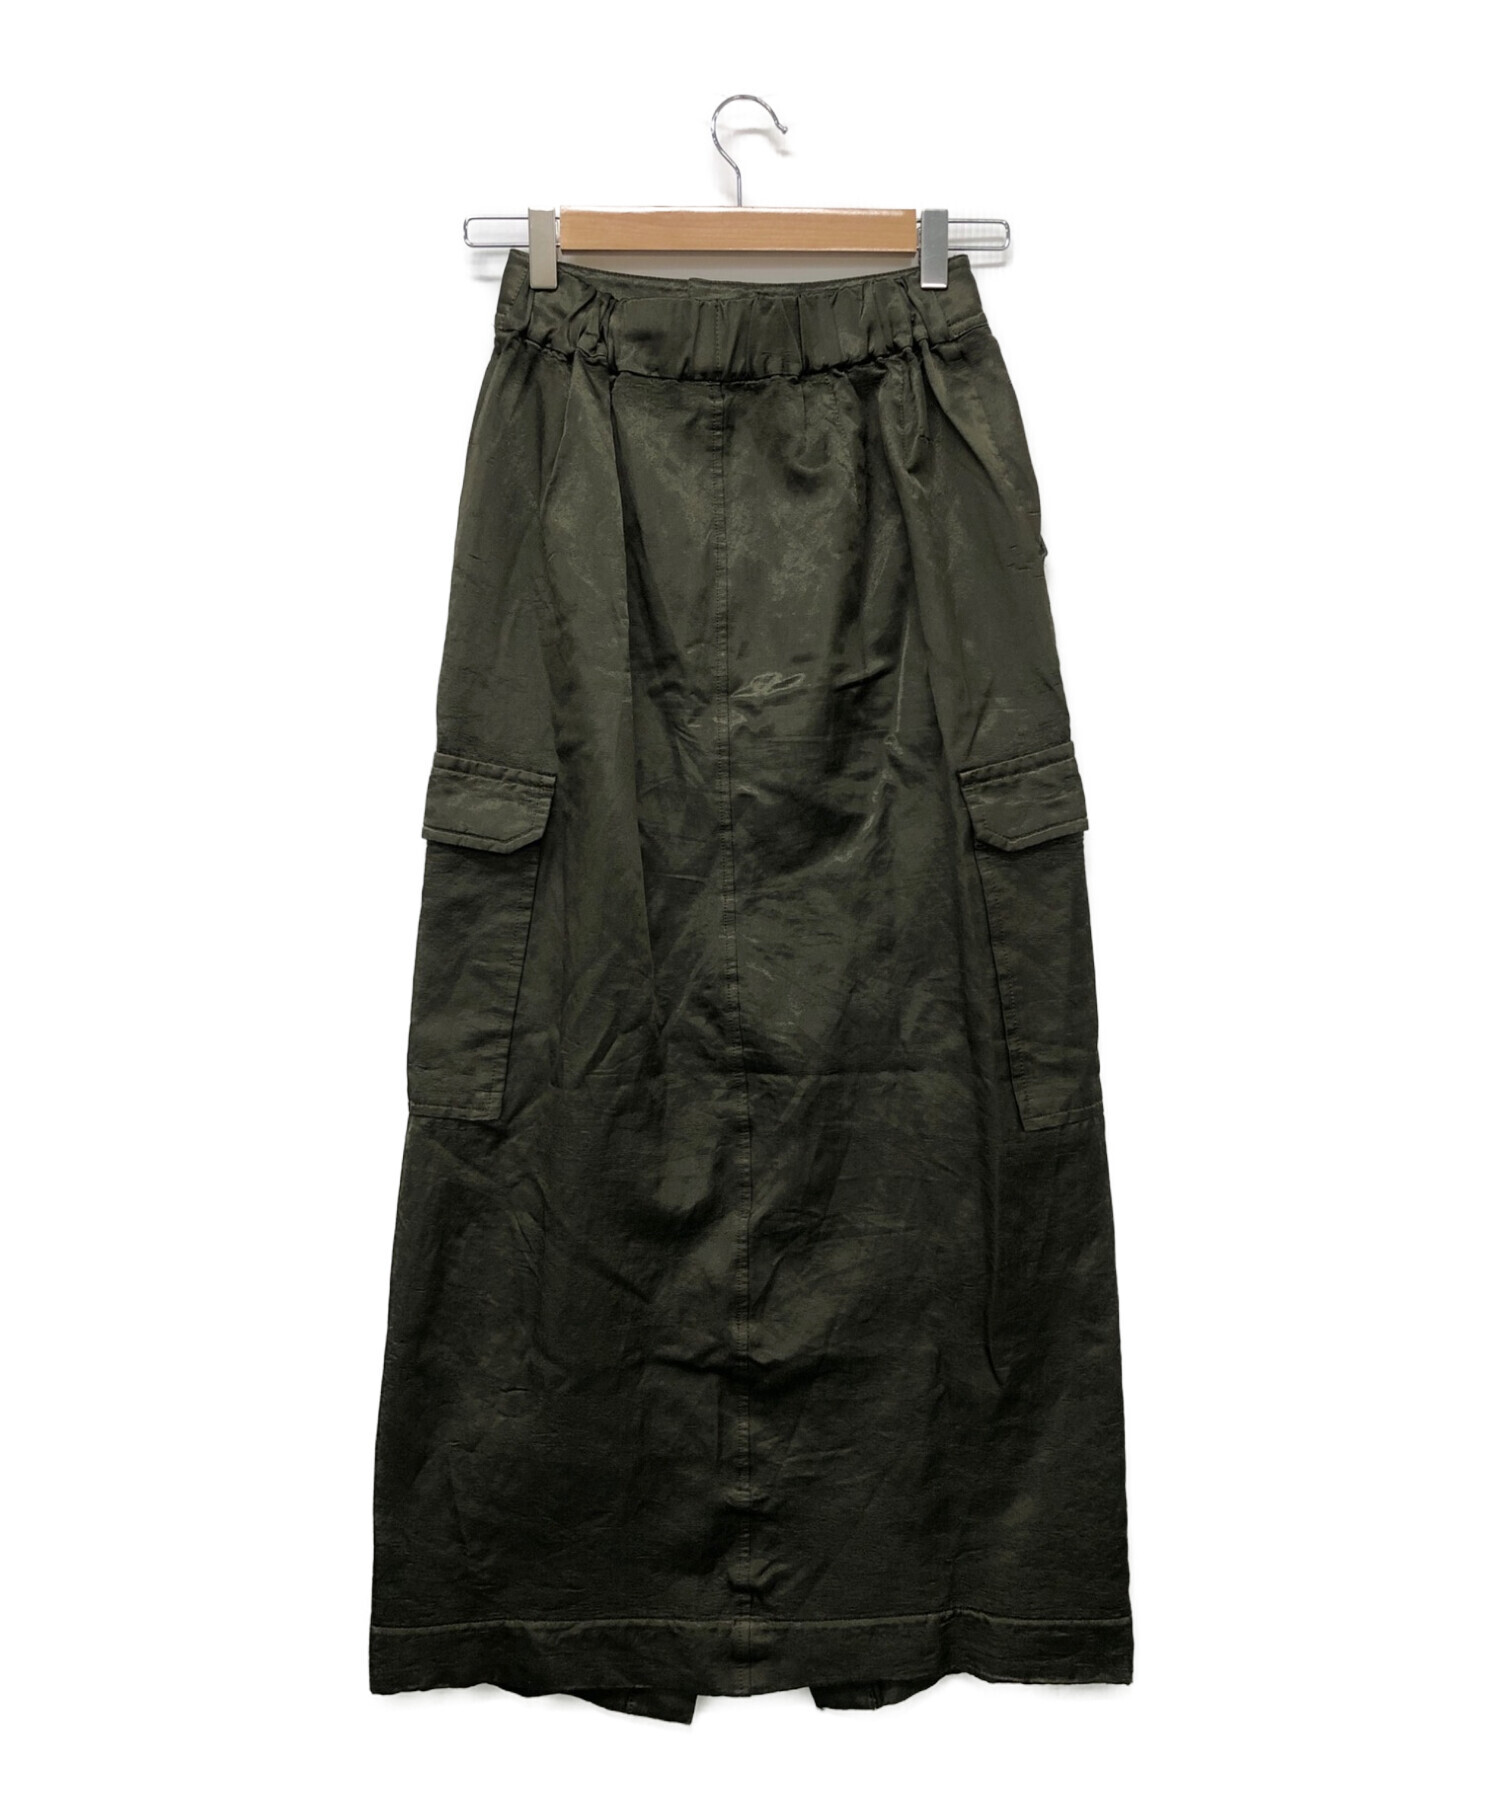 DOUBLE STANDARD CLOTHING (ダブルスタンダードクロージング) サテンスカート オリーブ サイズ:36